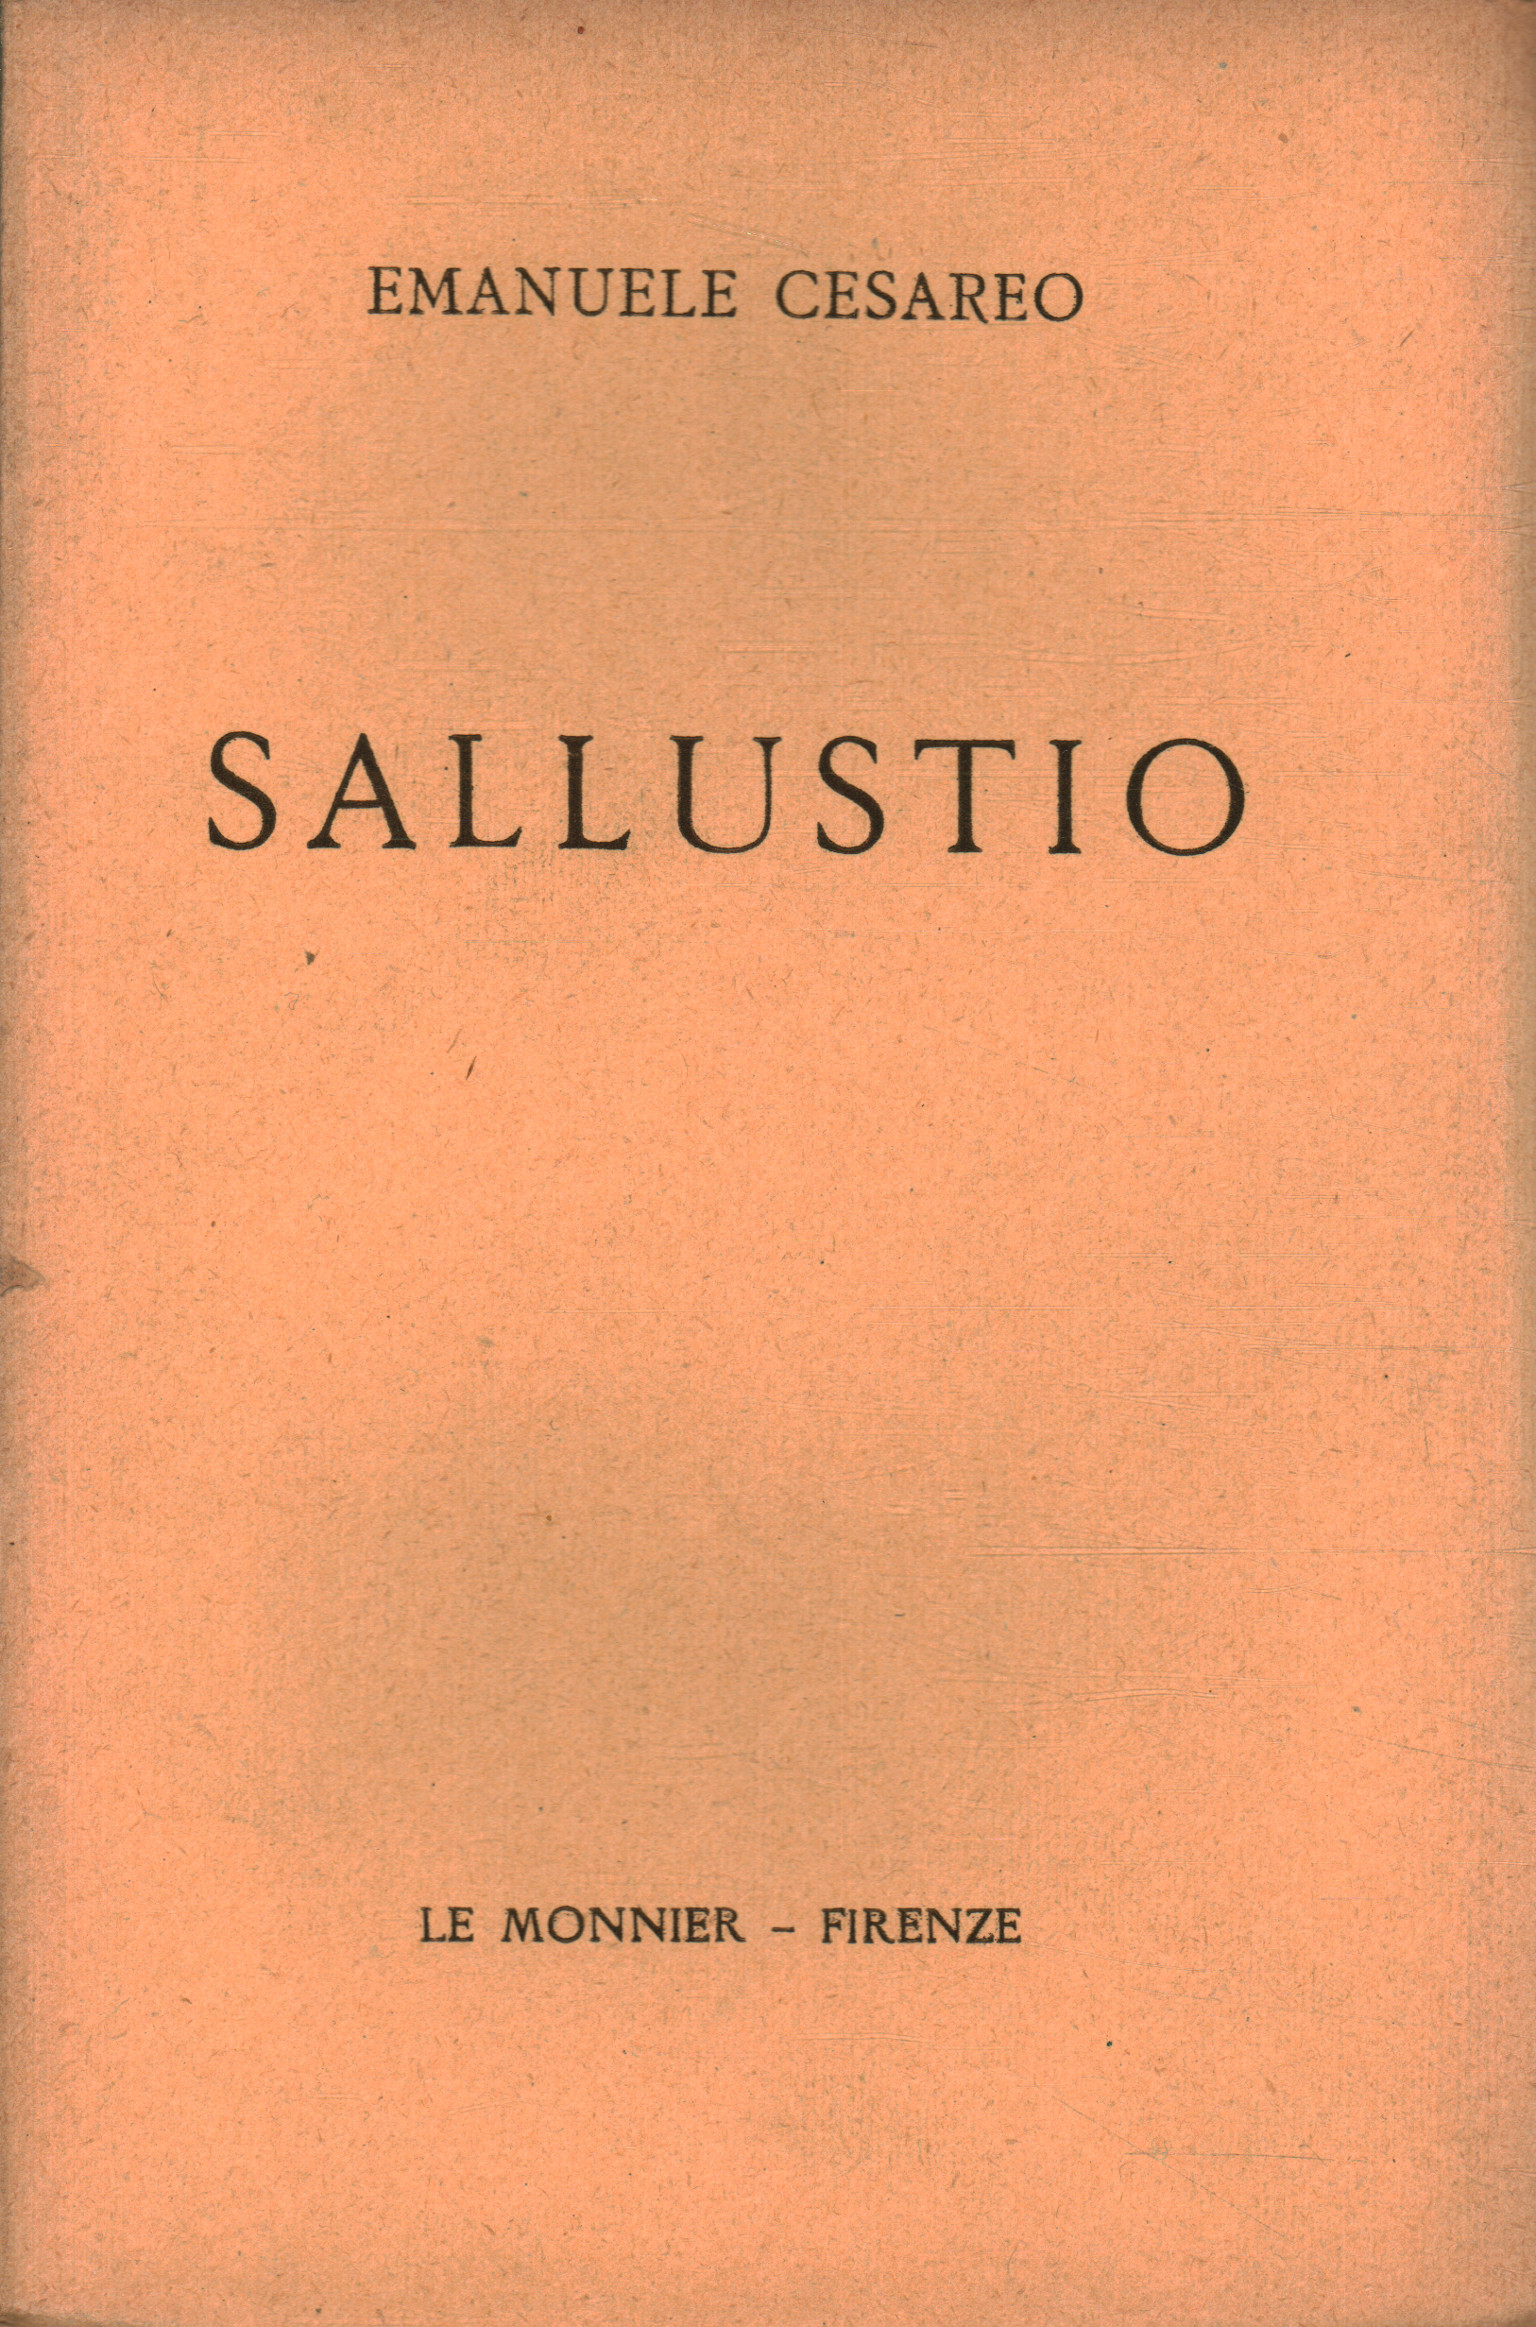 Sallustio